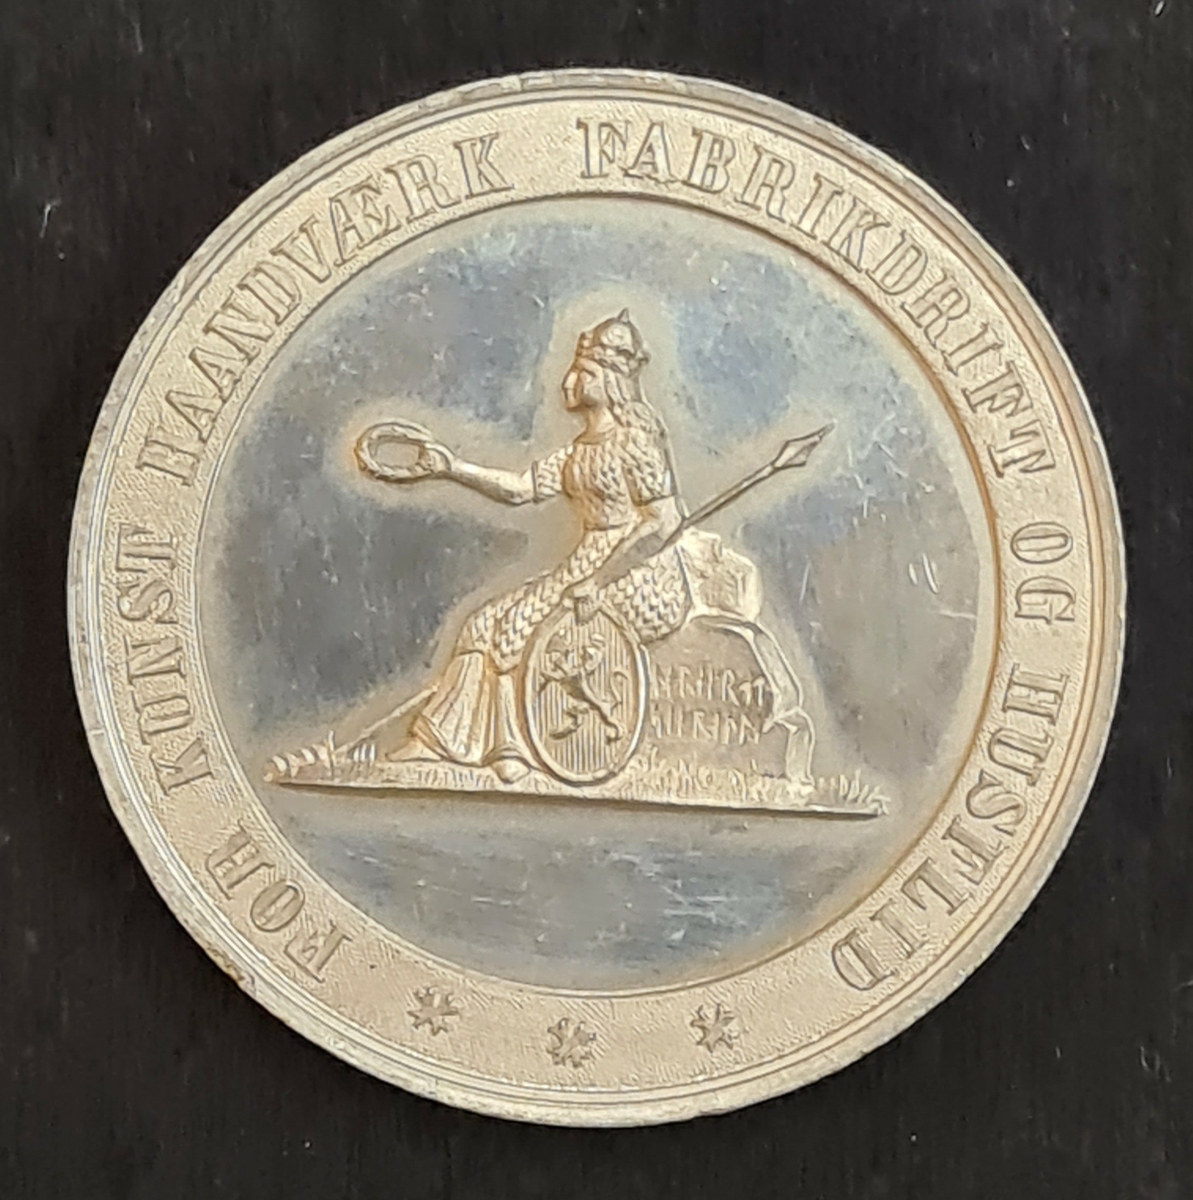 Medalj från Industriutställningen i Drammen, Tyskland år 1873.